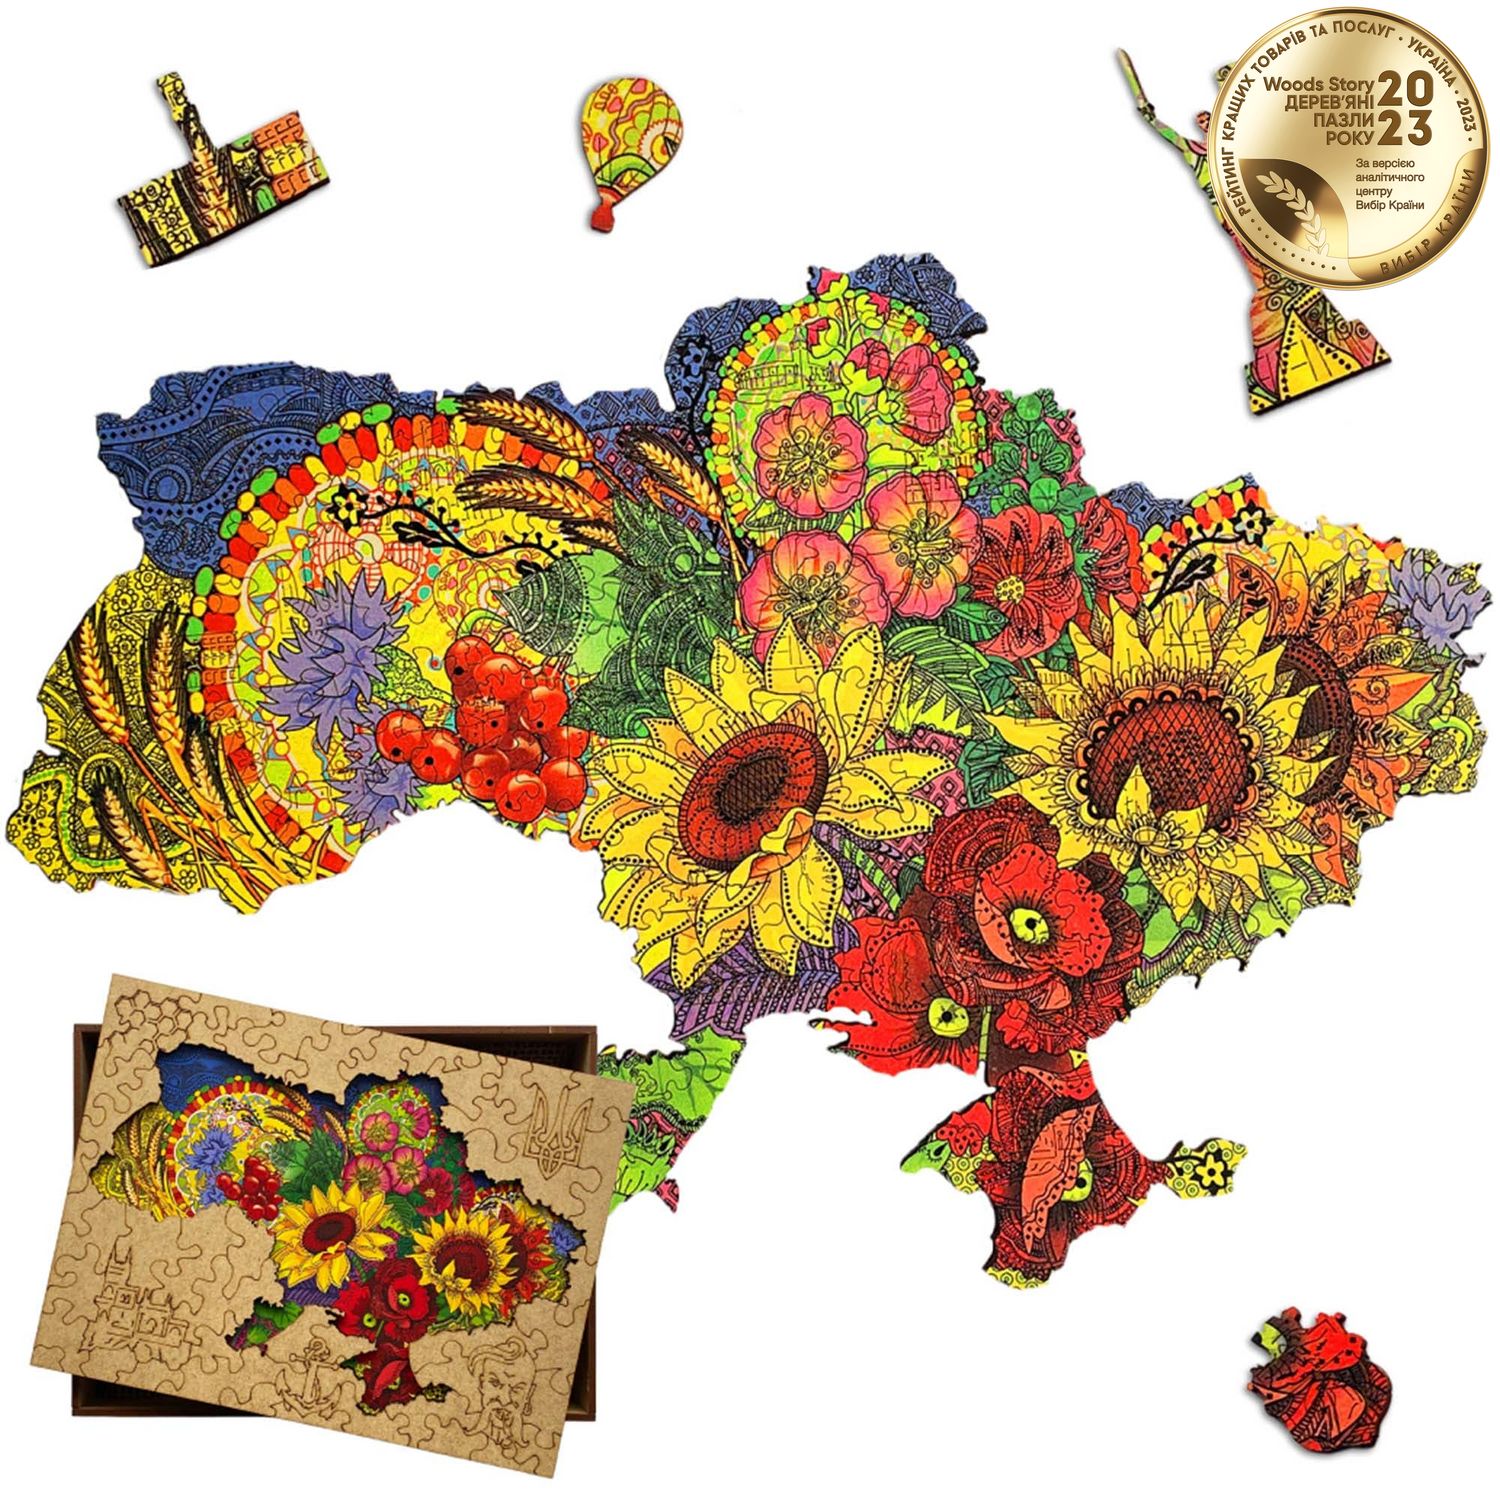 Патріотичний дерев'яний пазл Карта України квітуча XL